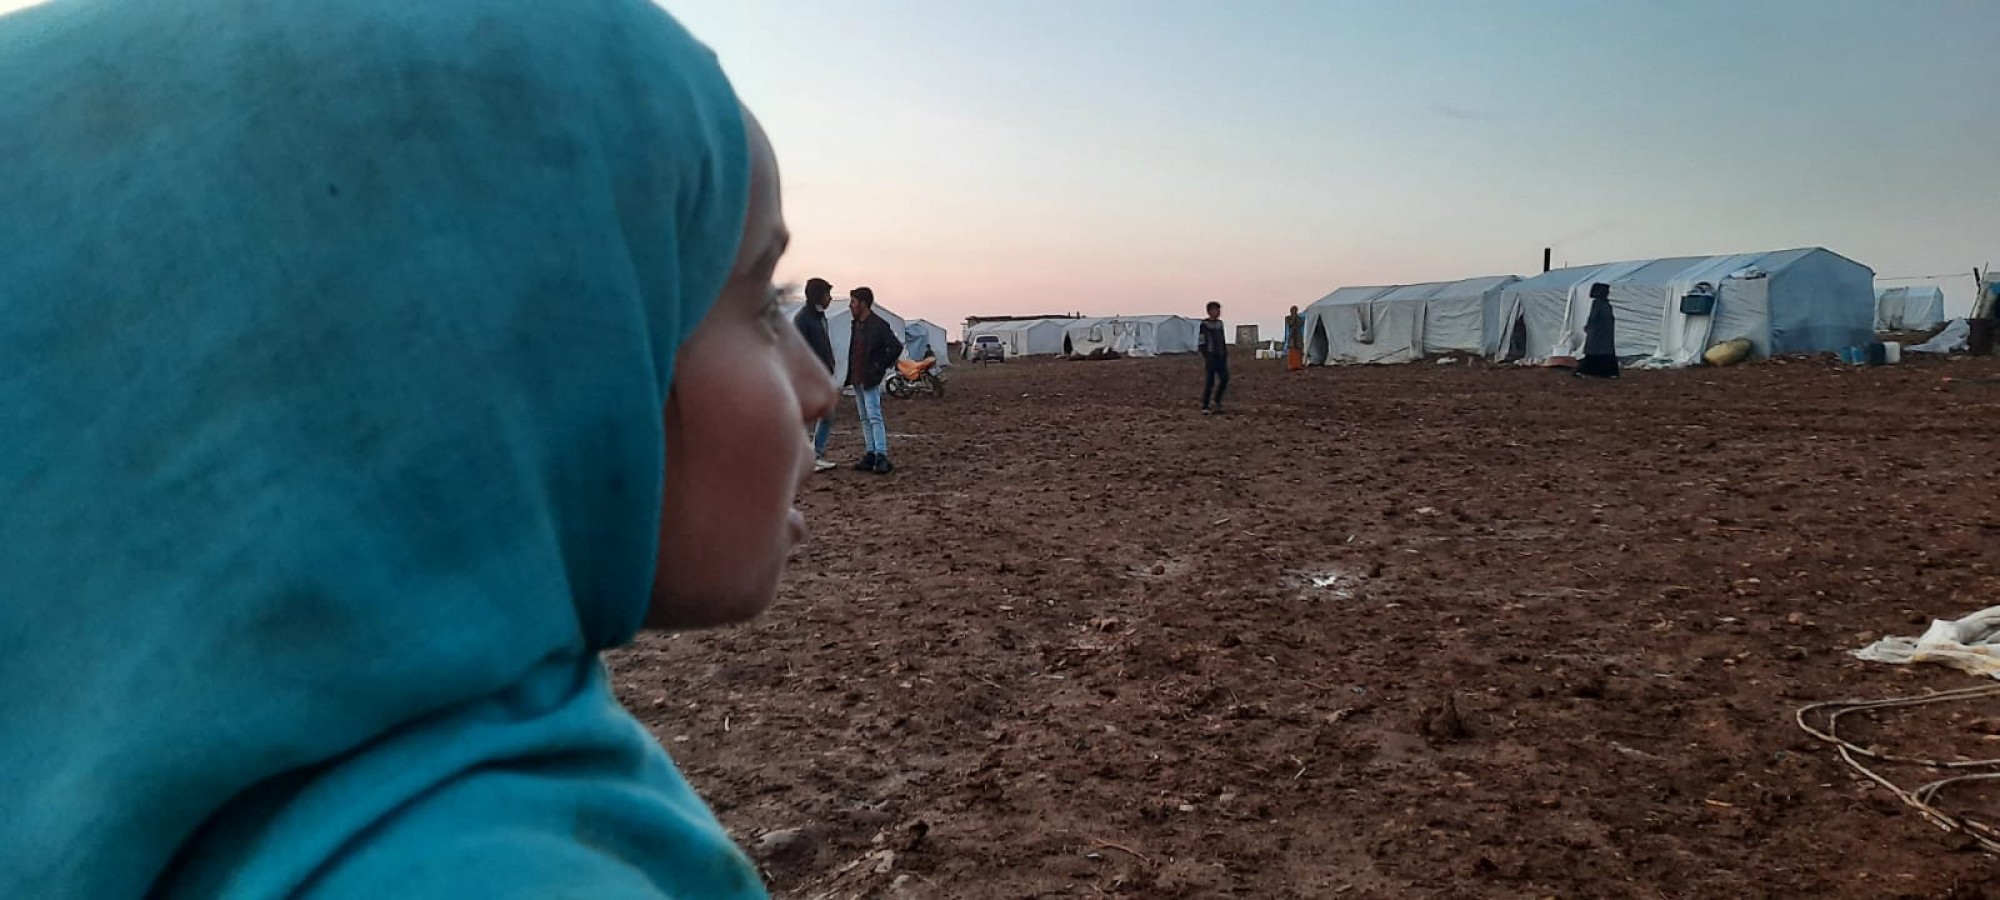 Urfa’da Suriyeli mültecilerin zorlu yaşam mücadelesi;